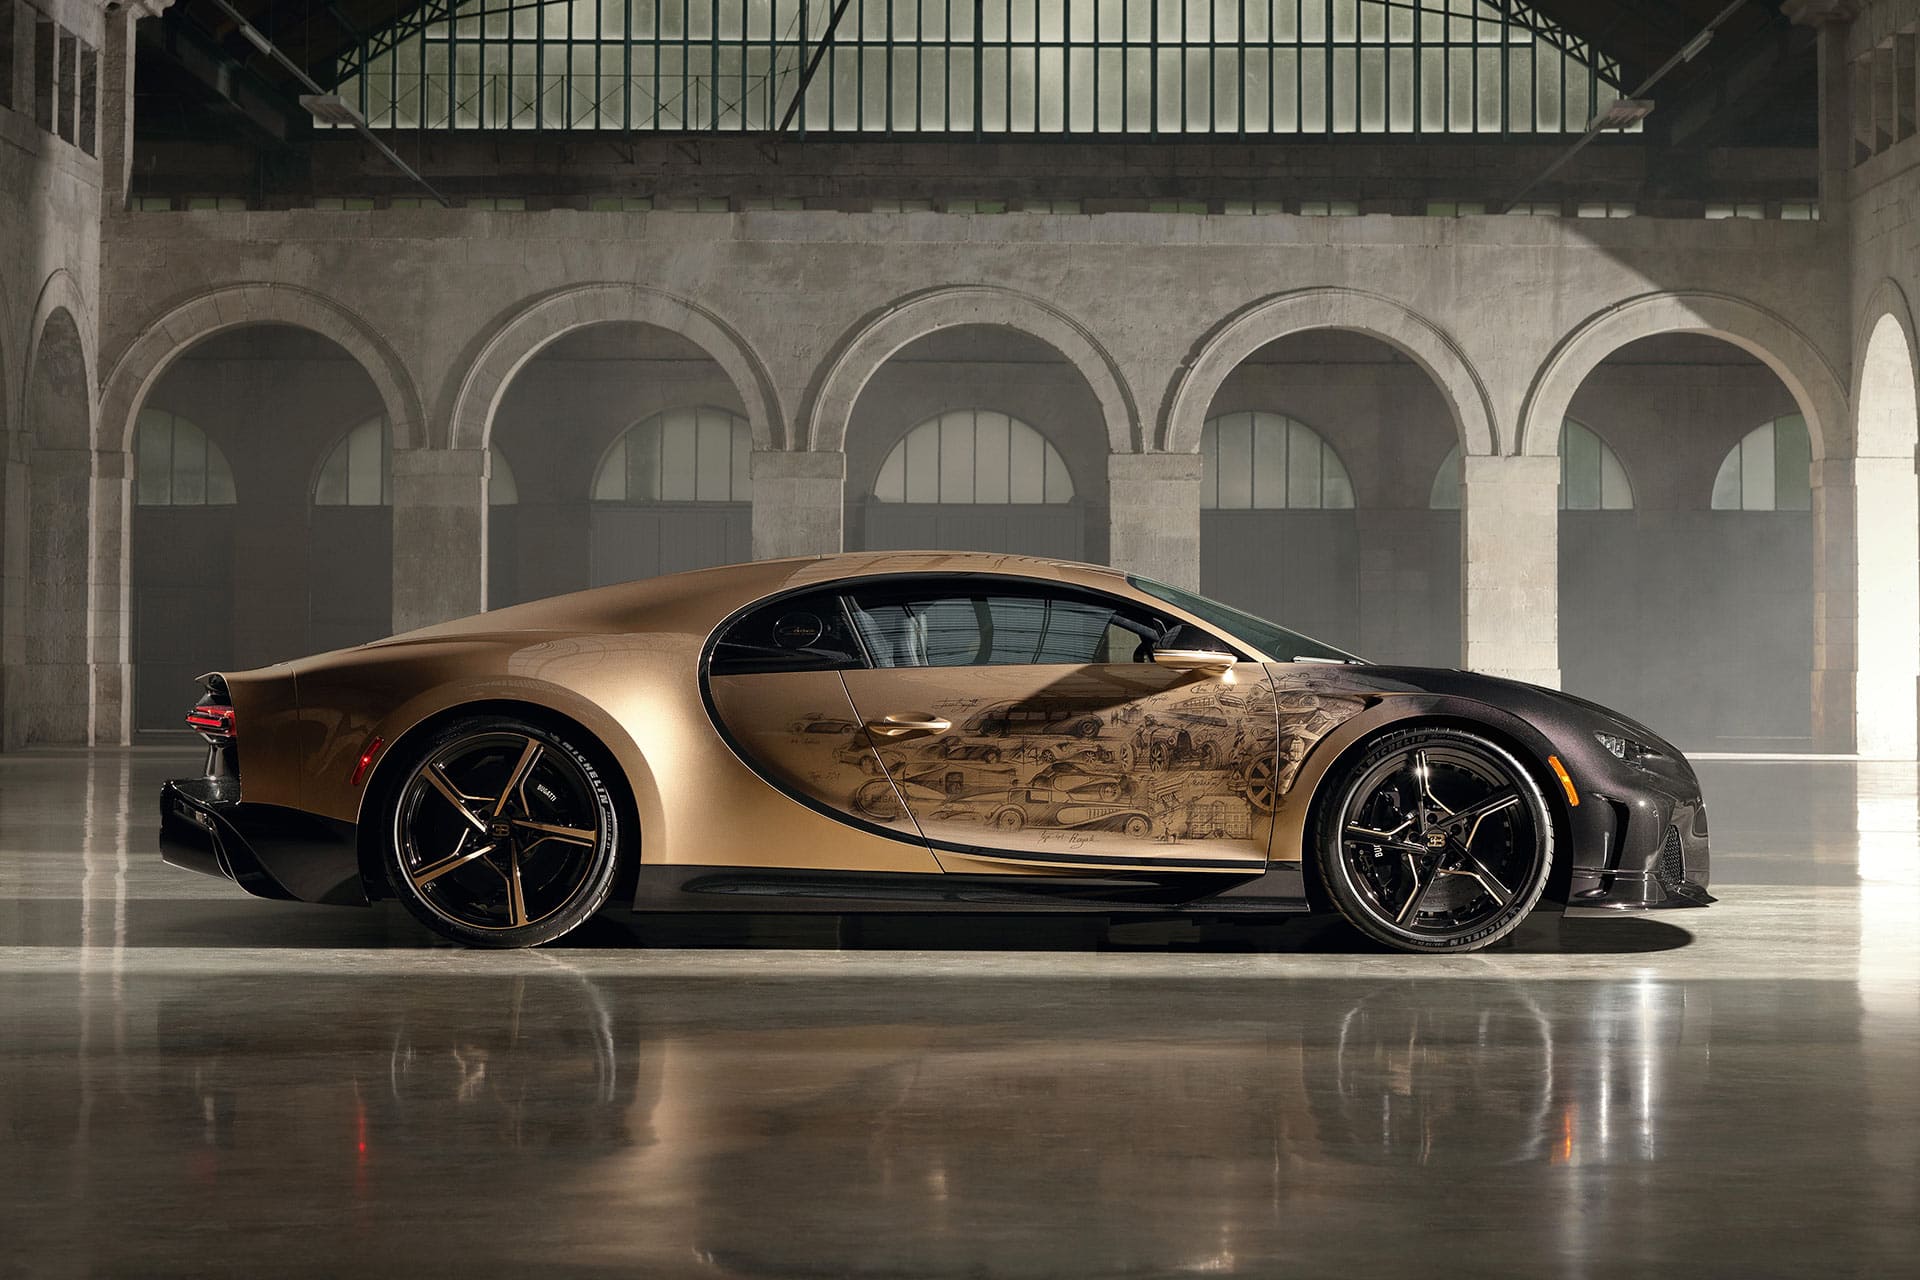 Auf der Fahrer und Beifahrertür finden sich historische Details der Bugatti-Ära